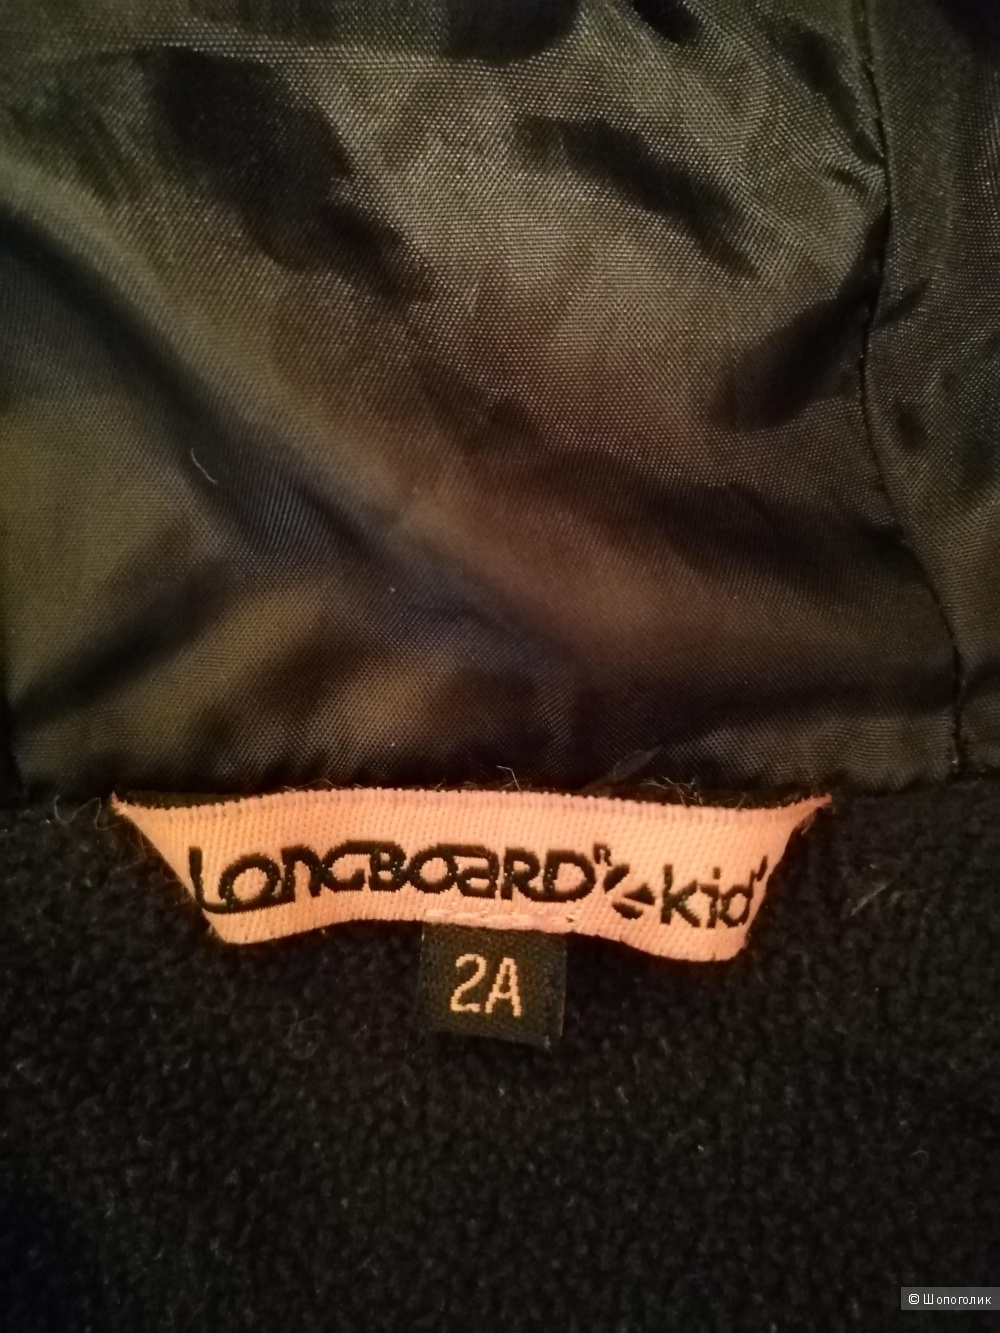 Куртка Kiabi и джинсы mothercare, размер 86-92